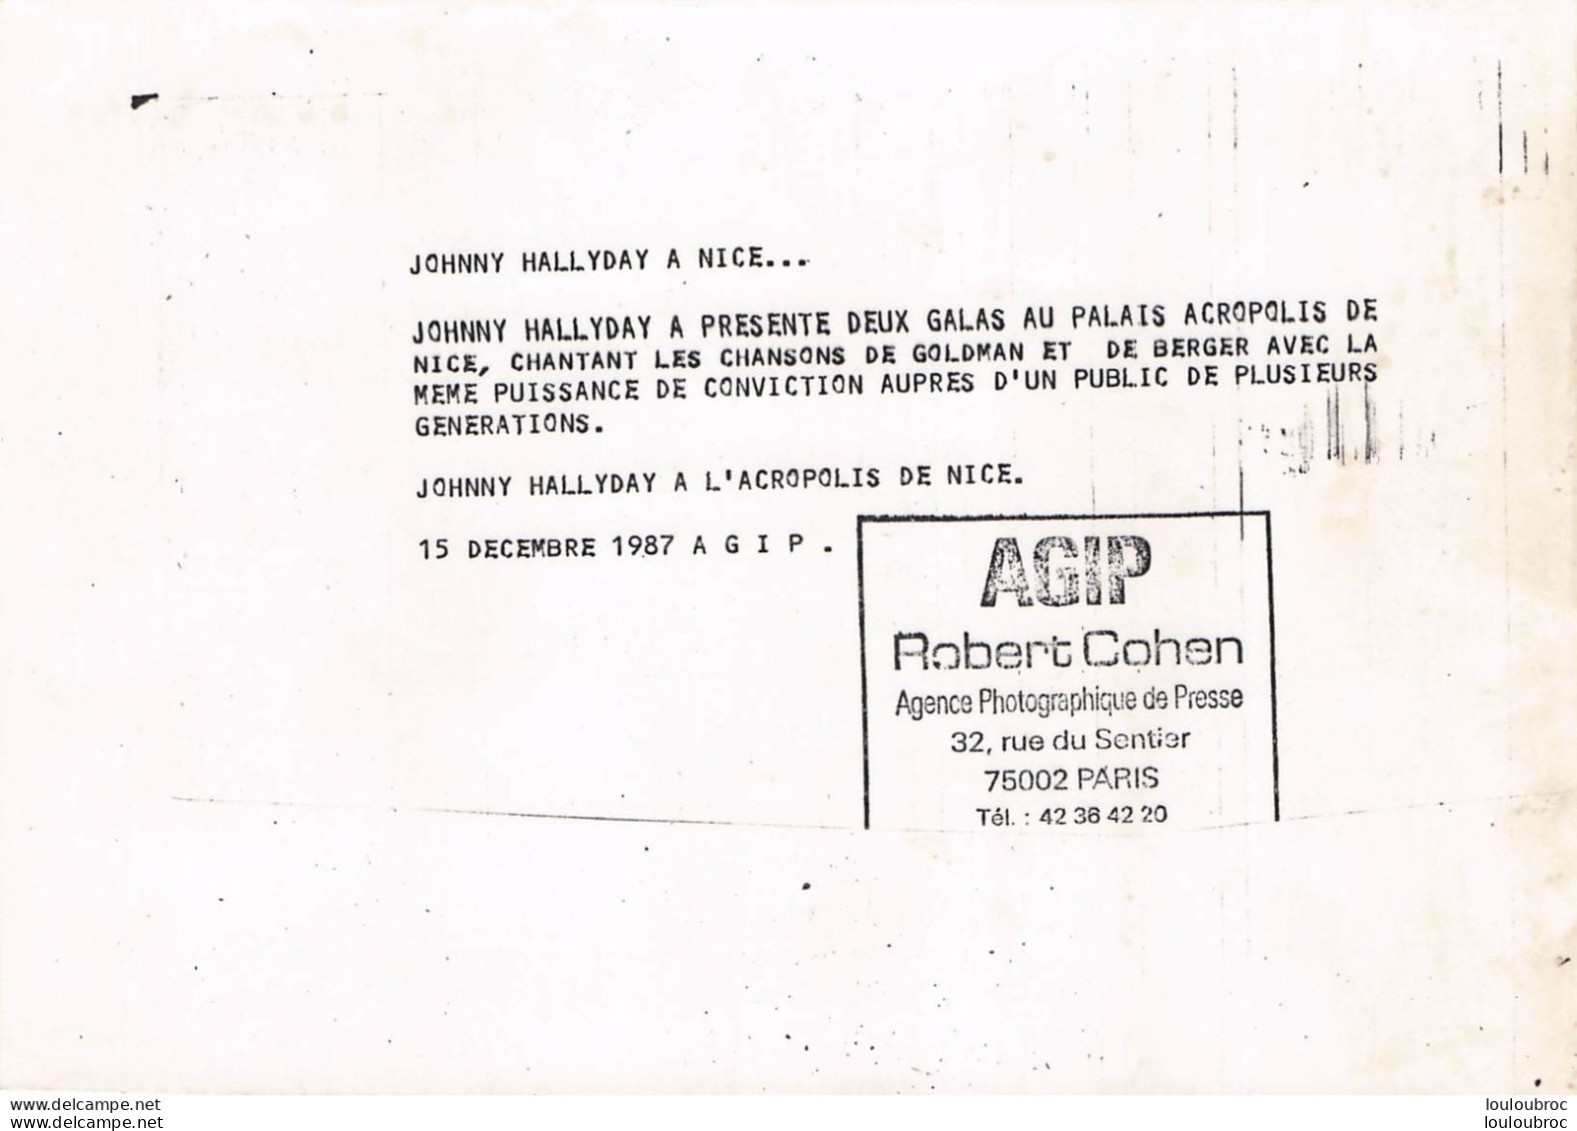 JOHNNY HALLYDAY 1987 A L'ACROPOLIS DE NICE CHANTANT GOLDMAN ET BERGER  PHOTO DE PRESSE ORIGINALE 21X15CM - Célébrités